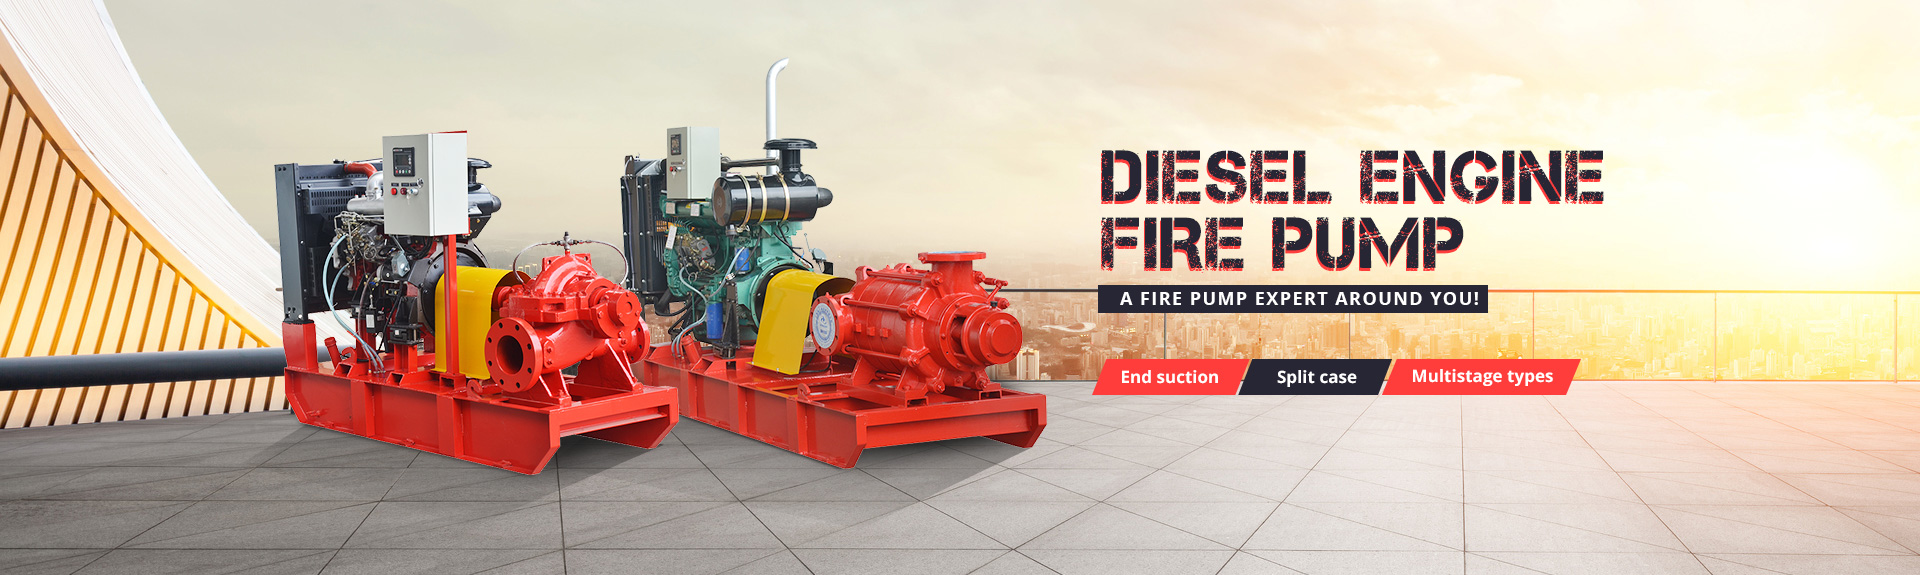 Diesel Engine Fire Pump